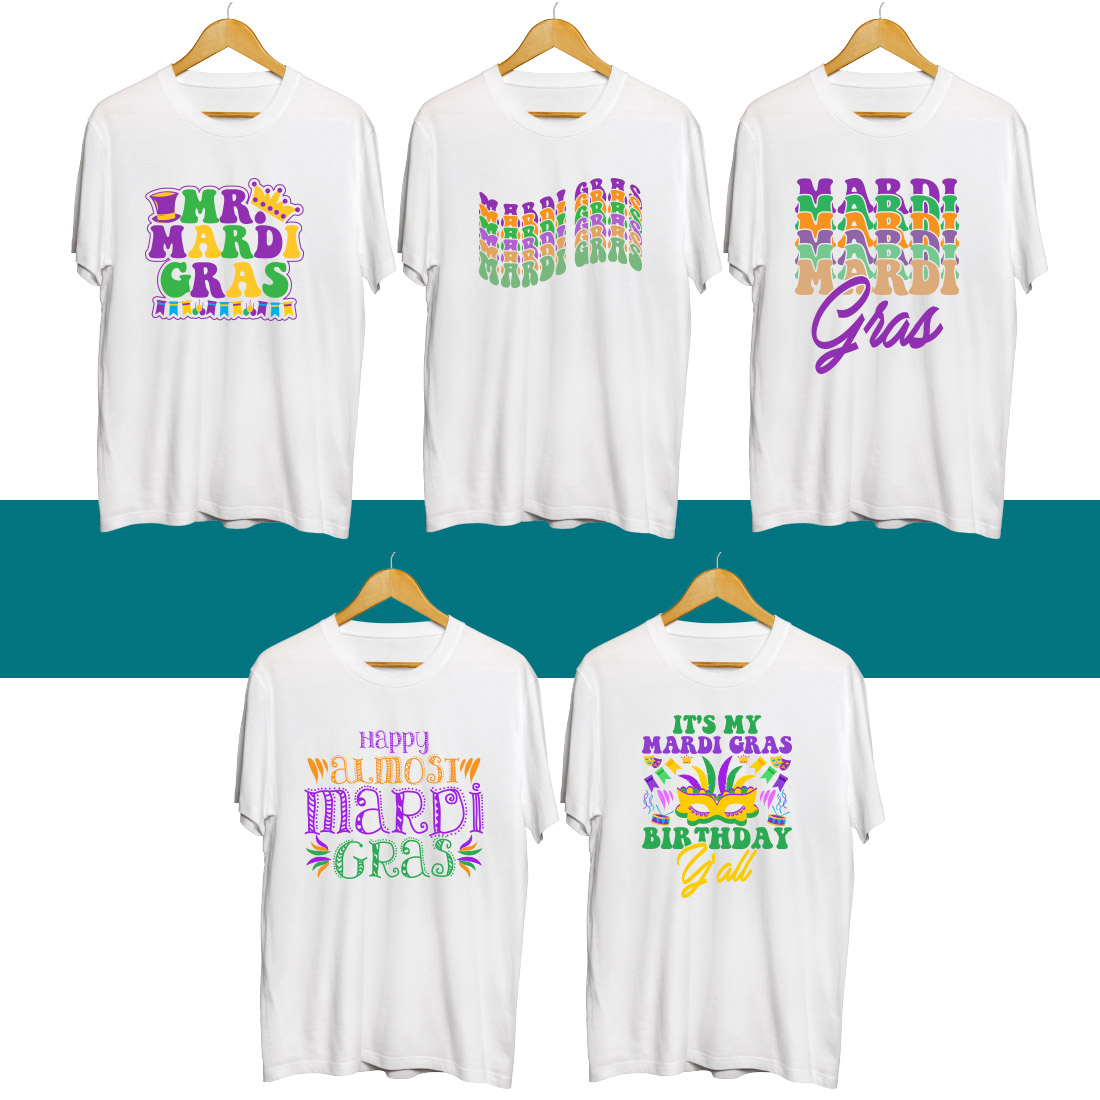 Mardi Gras SVG T Shirt Designs Bundle preview image.